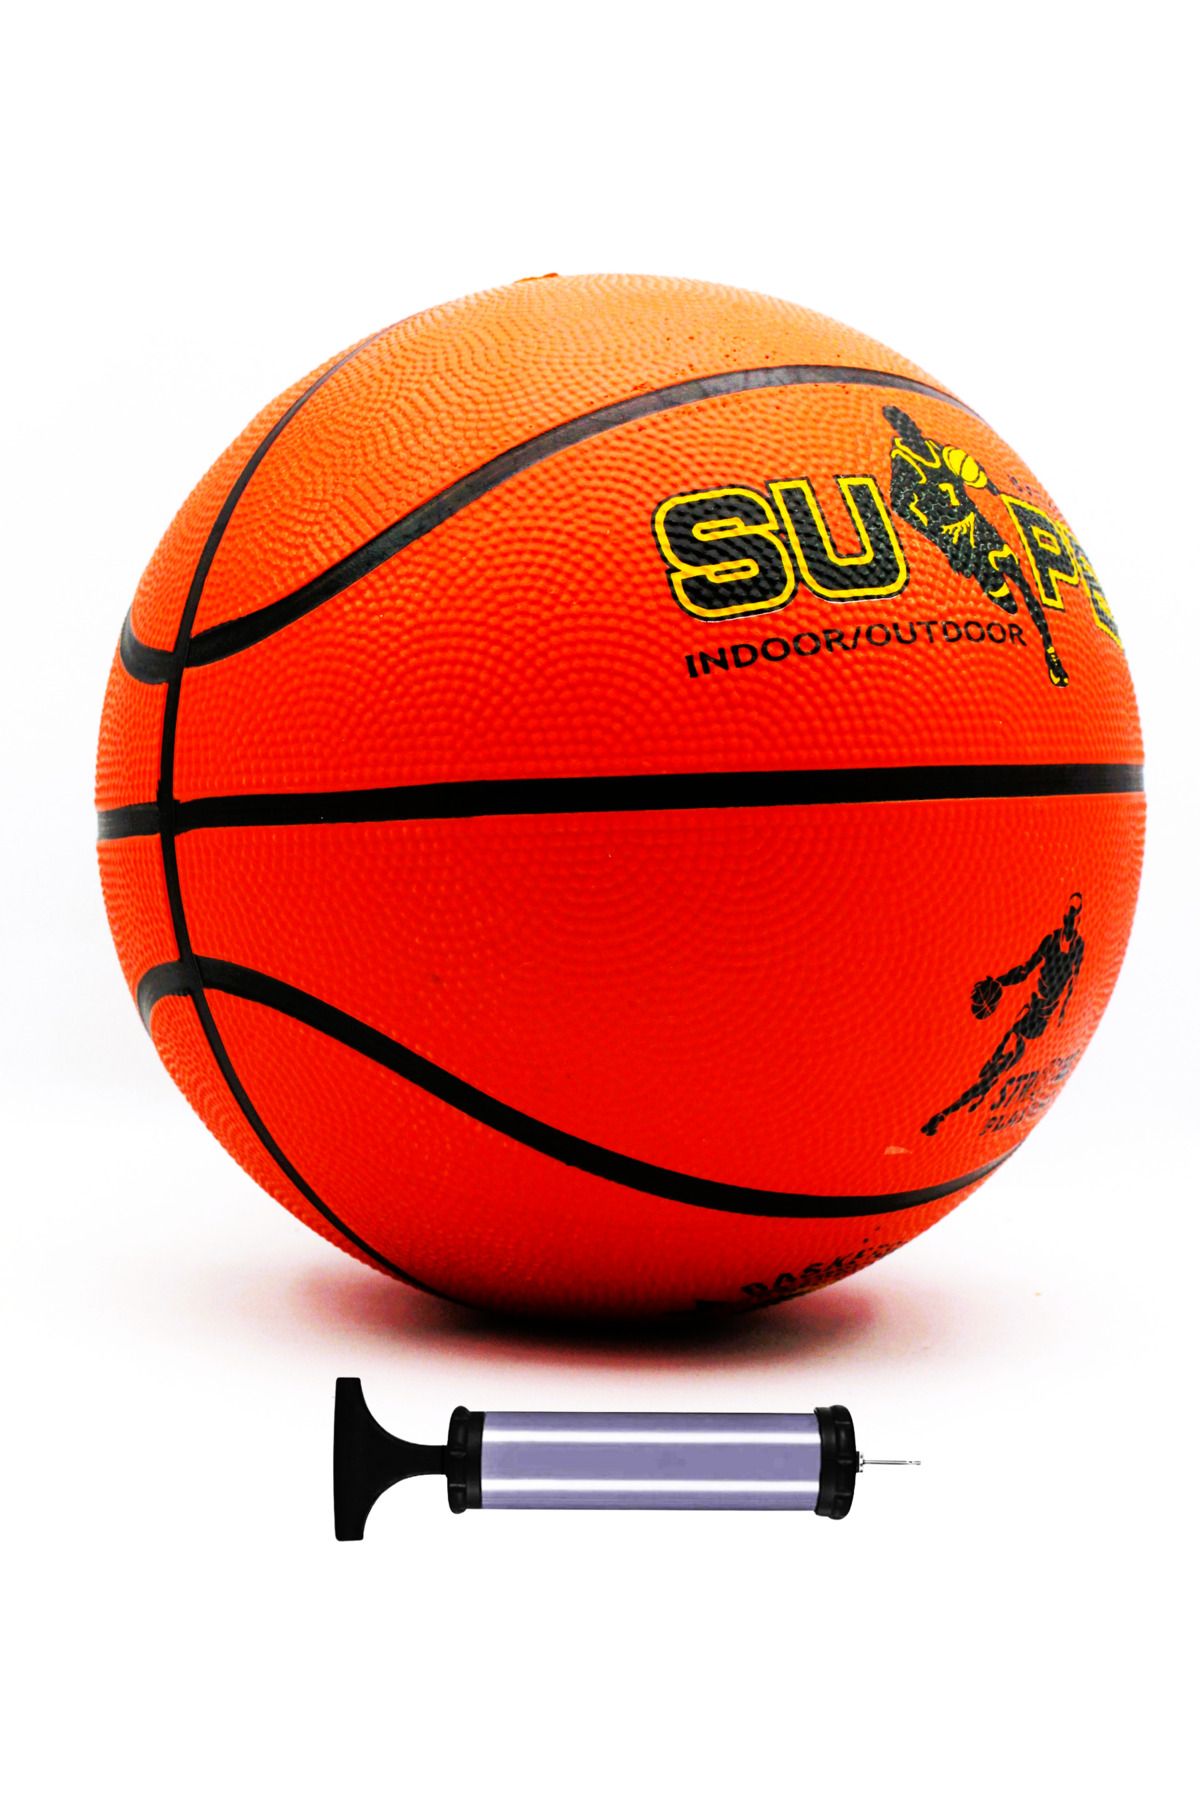 Genel Markalar Pompa dahildir Basketbol Topu Iç Dış Mekan Pompa Hediyeli 7 Numara Turuncu Turuncu 7 Numara